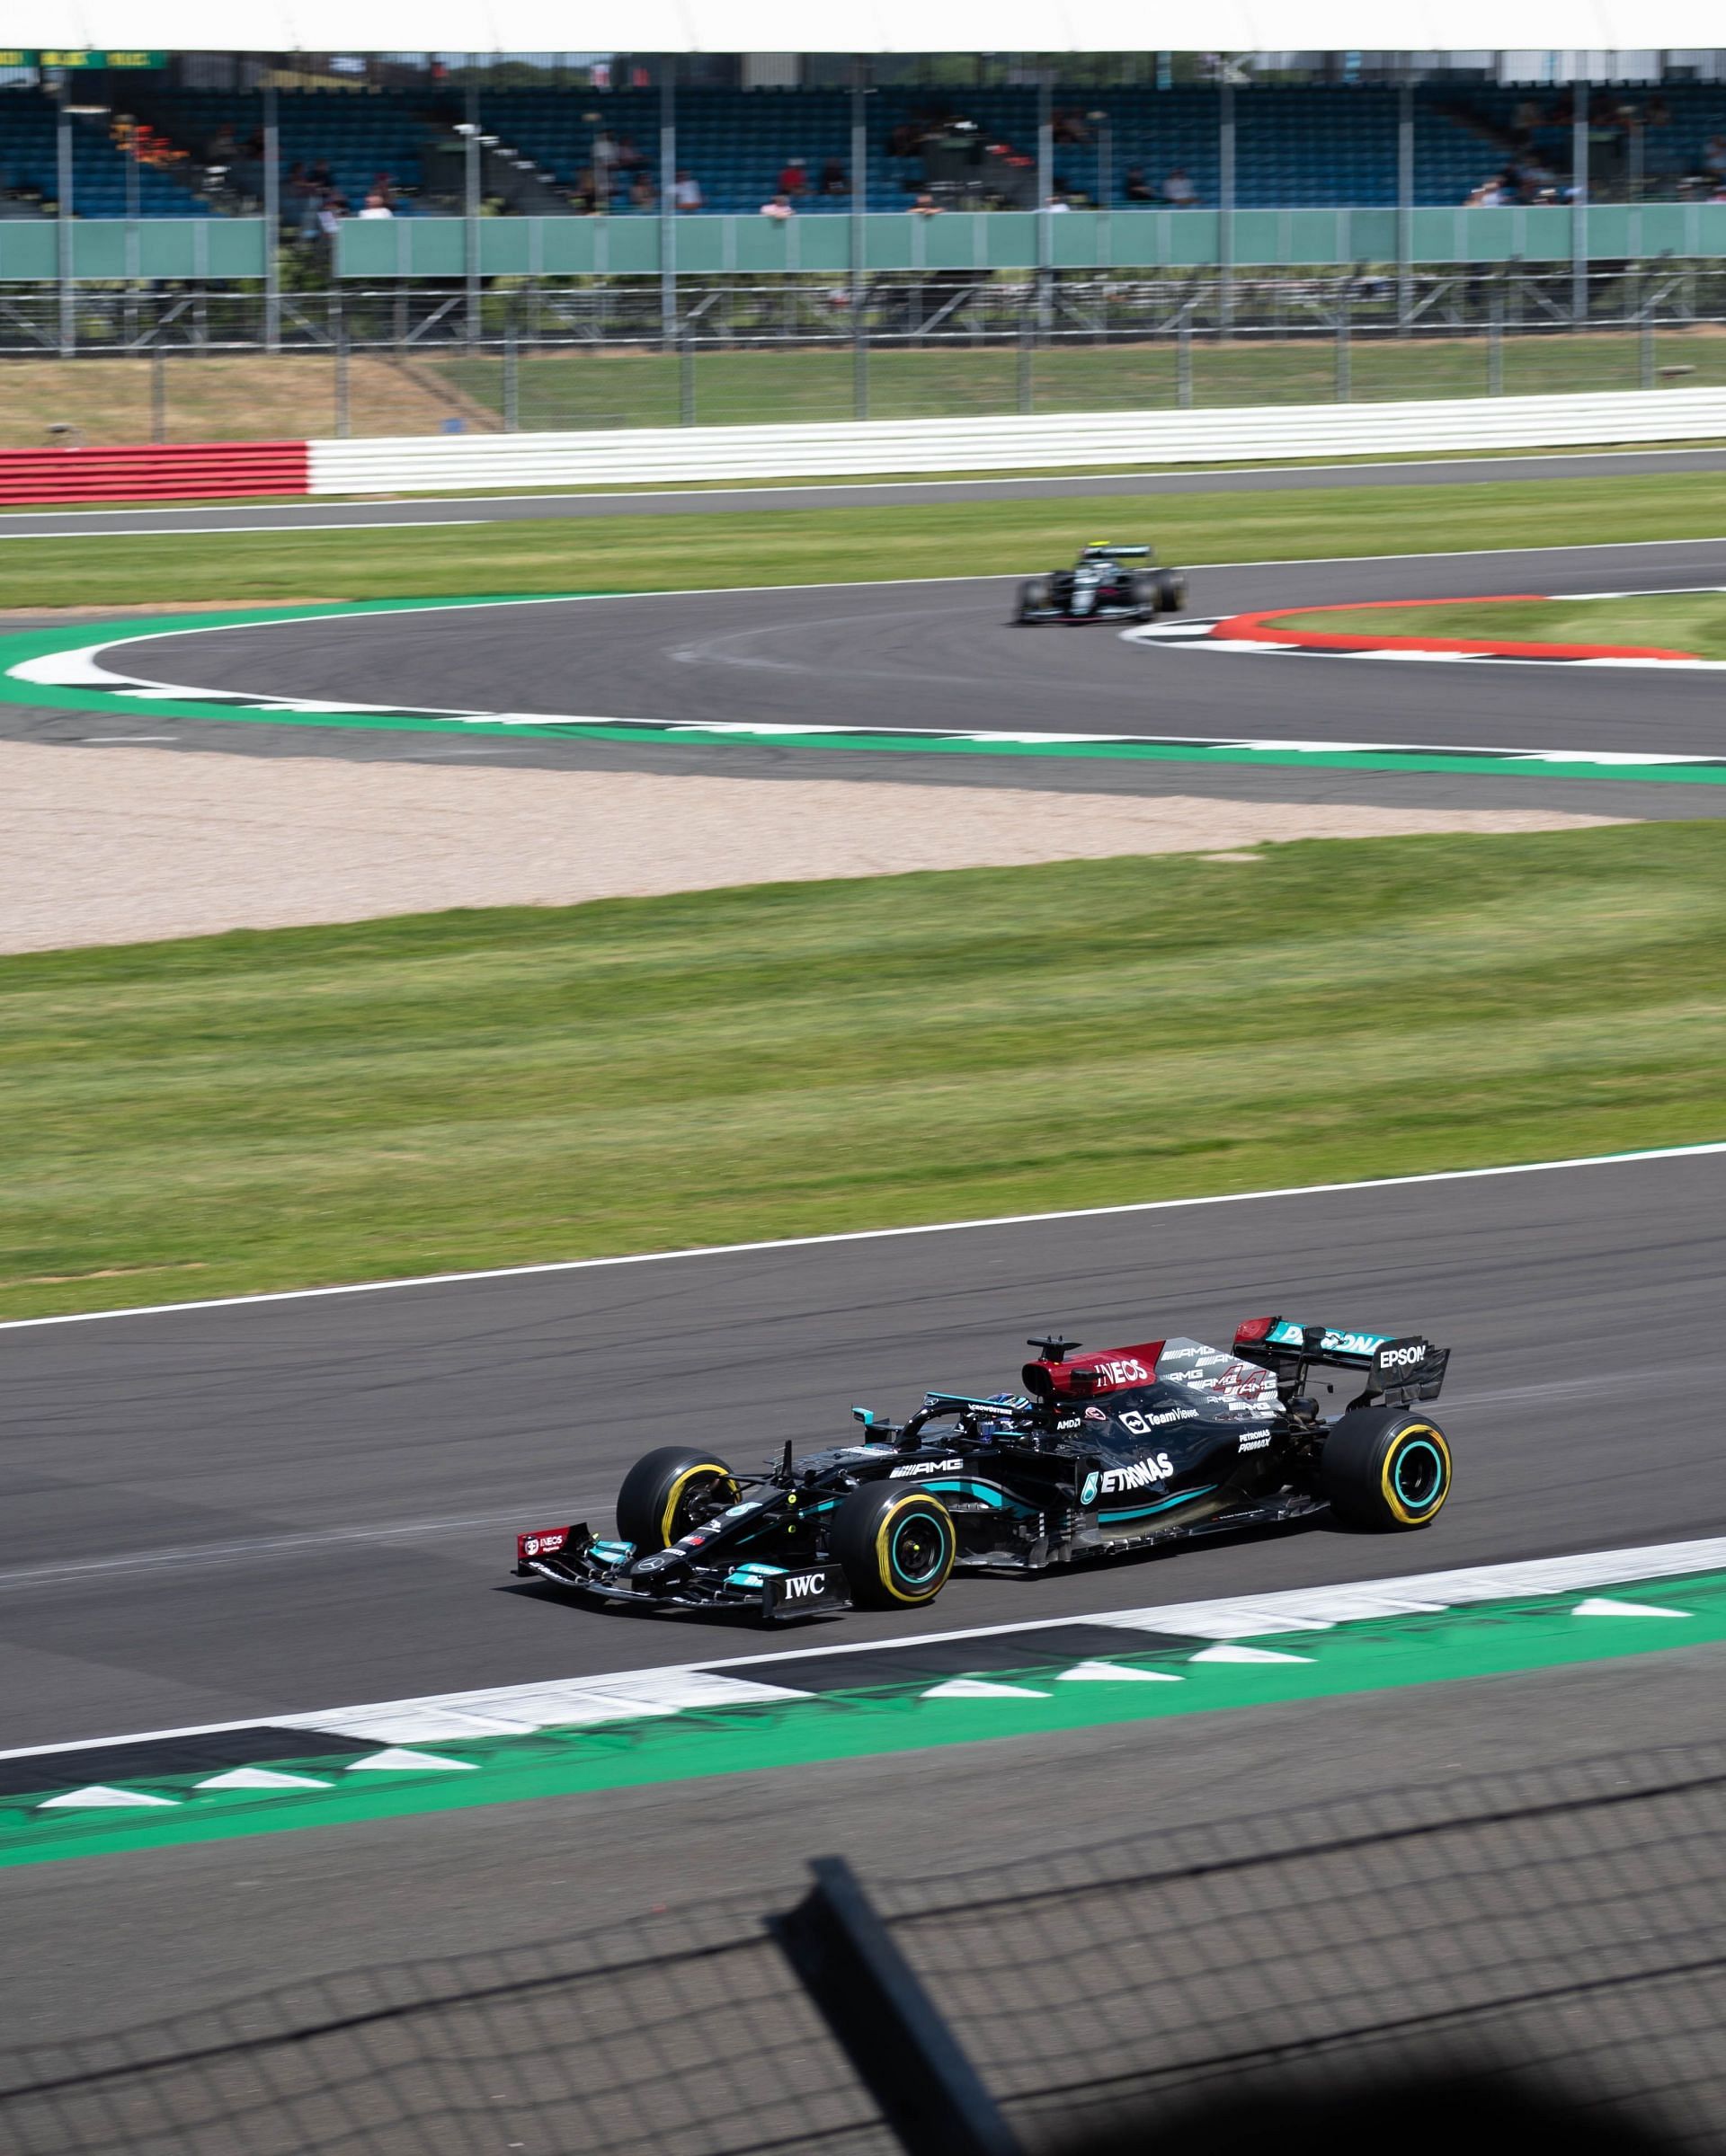 Lewis Hamilton at the 2021 British grand prix in Silverstone